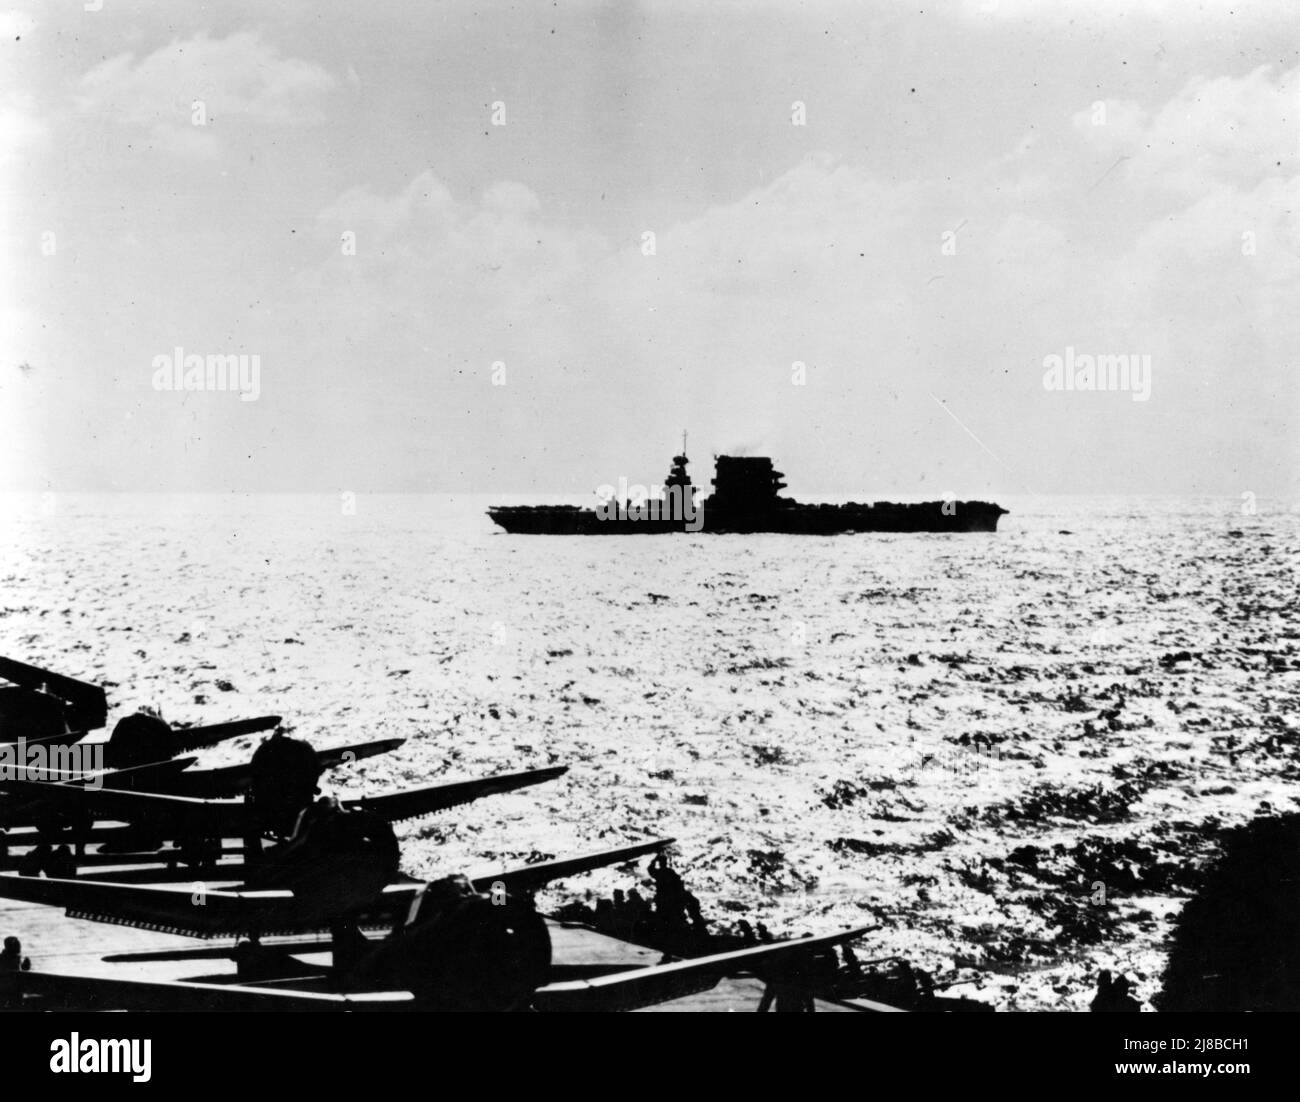 USS Lexington (CV-2) pendant l'action, vu de l'USS Yorktown (CV-5), 8 mai 1942. Un grand nombre d'avions sur le pont et le soleil bas indiquent que la photo a été prise tôt le matin, avant de lancer la grève contre la force aérienne japonaise. Yorktown a plusieurs SBD et F4Fs sur le pont avec des moteurs en marche, apparemment en préparation pour le décollage. Lexington, dont la silhouette a été modifiée par le retrait plus tôt de ses tourelles à canon de 8 pouces, a des avions garés avant et arrière, et peut être en train de forcer son pont en préparation pour lancer l'avion. Banque D'Images